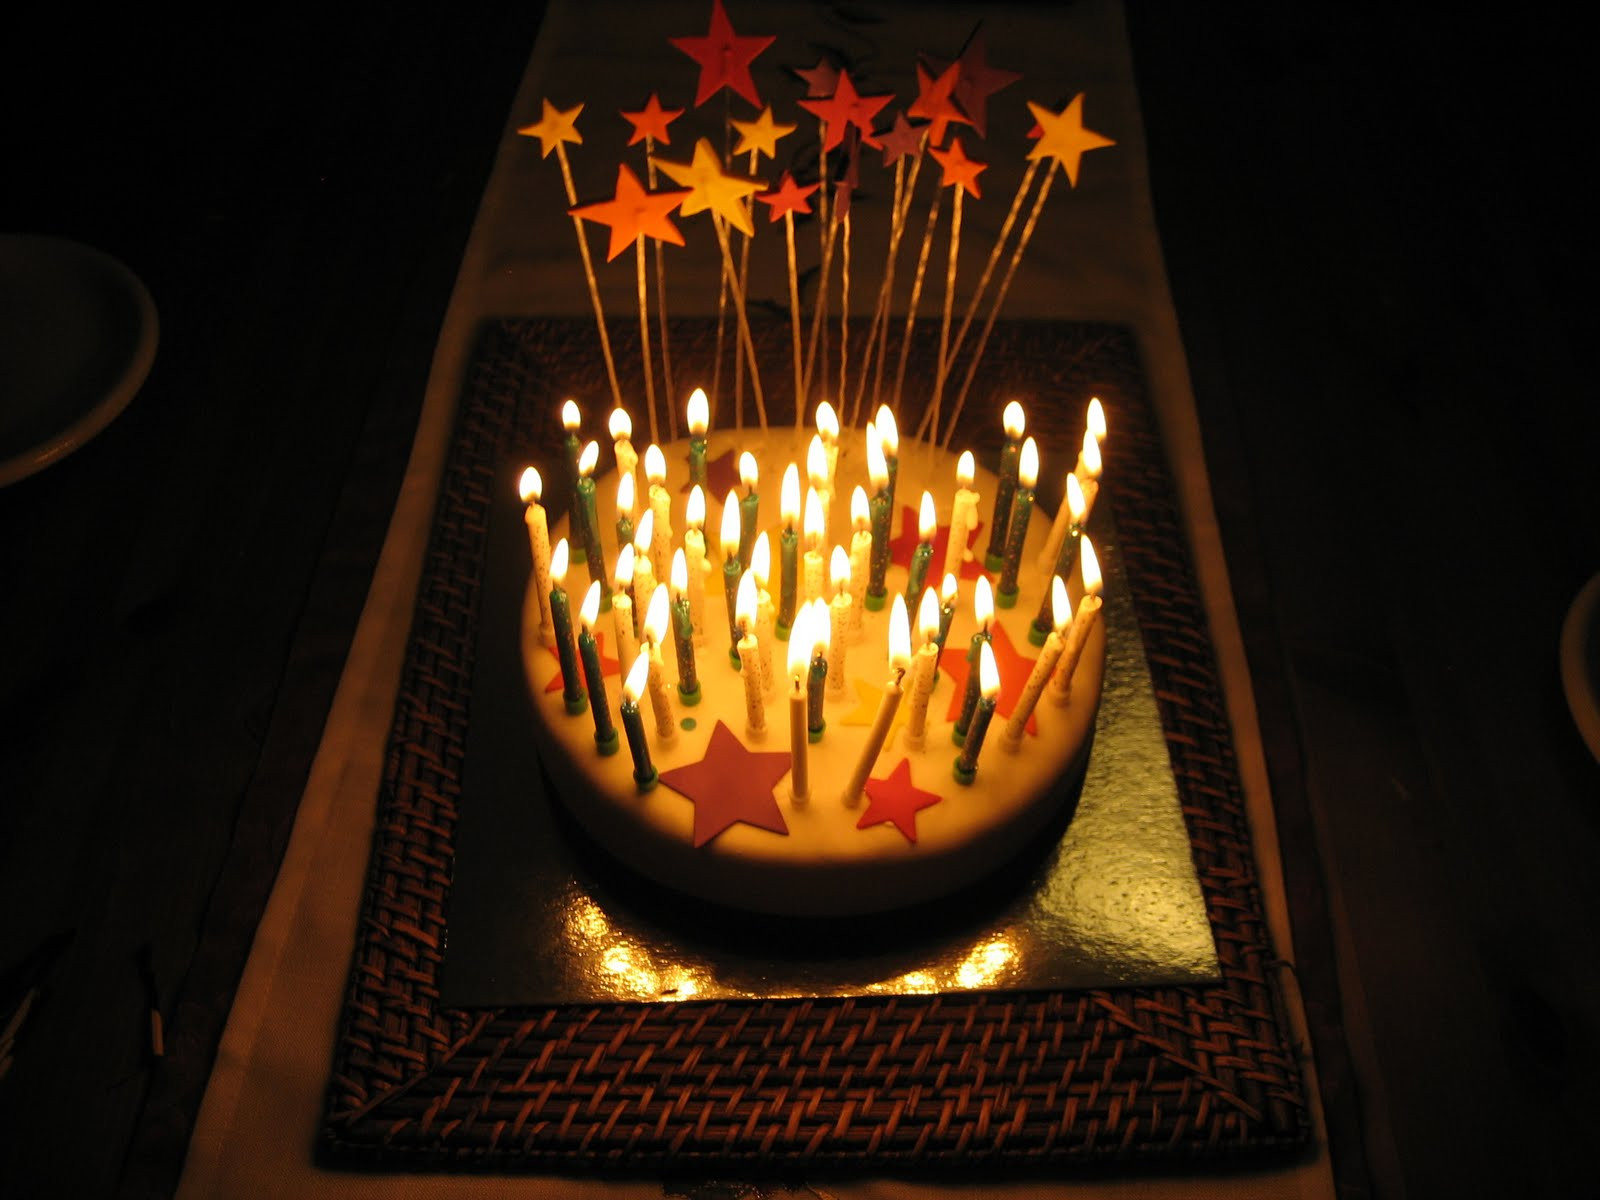 Best ideas about Birthday Cake Fire
. Save or Pin DarkDwarf Blog Birthday Cake Fire Hazard Now.